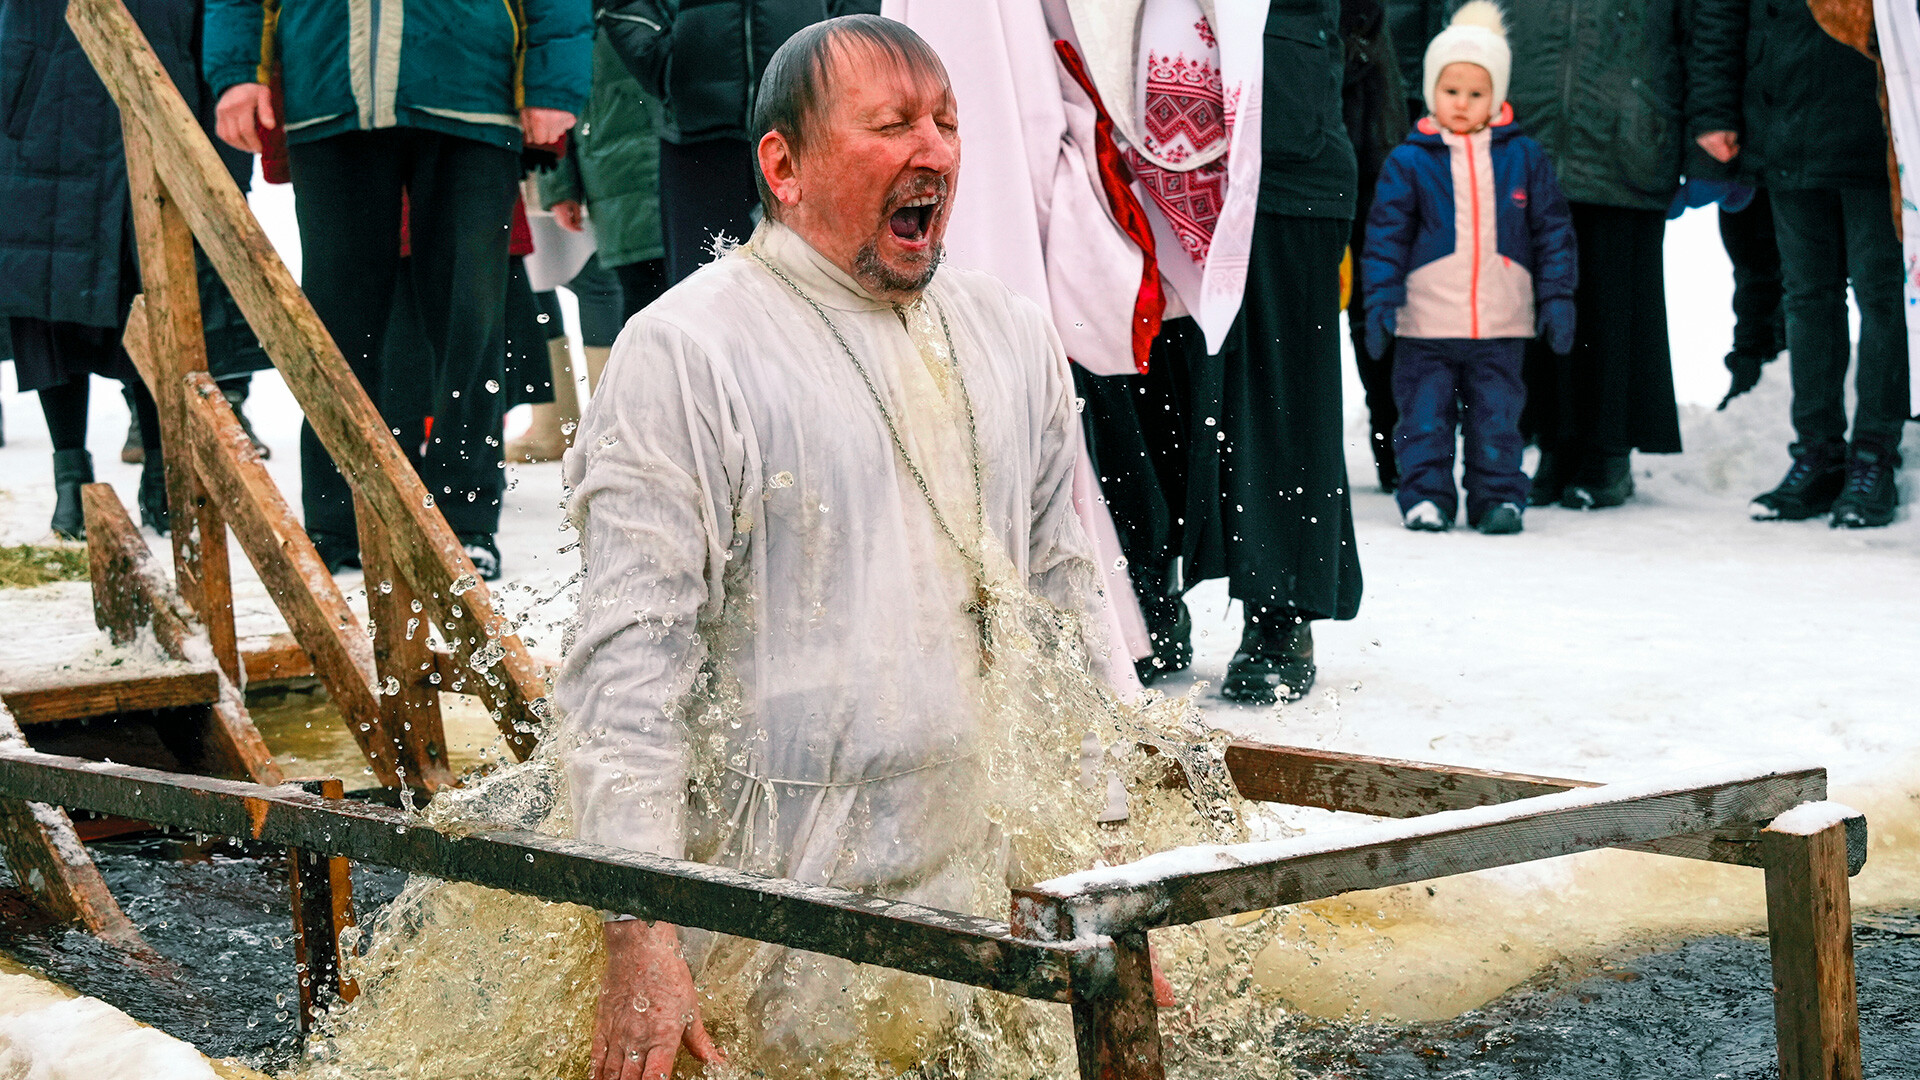 Die Taufe Jesu ist ein großes Fest in der russisch-orthodoxen Kirche. Allerdings ist das Eintauchen in eisige Gewässer in der Nacht dieses Festes kein christlicher Ritus.
